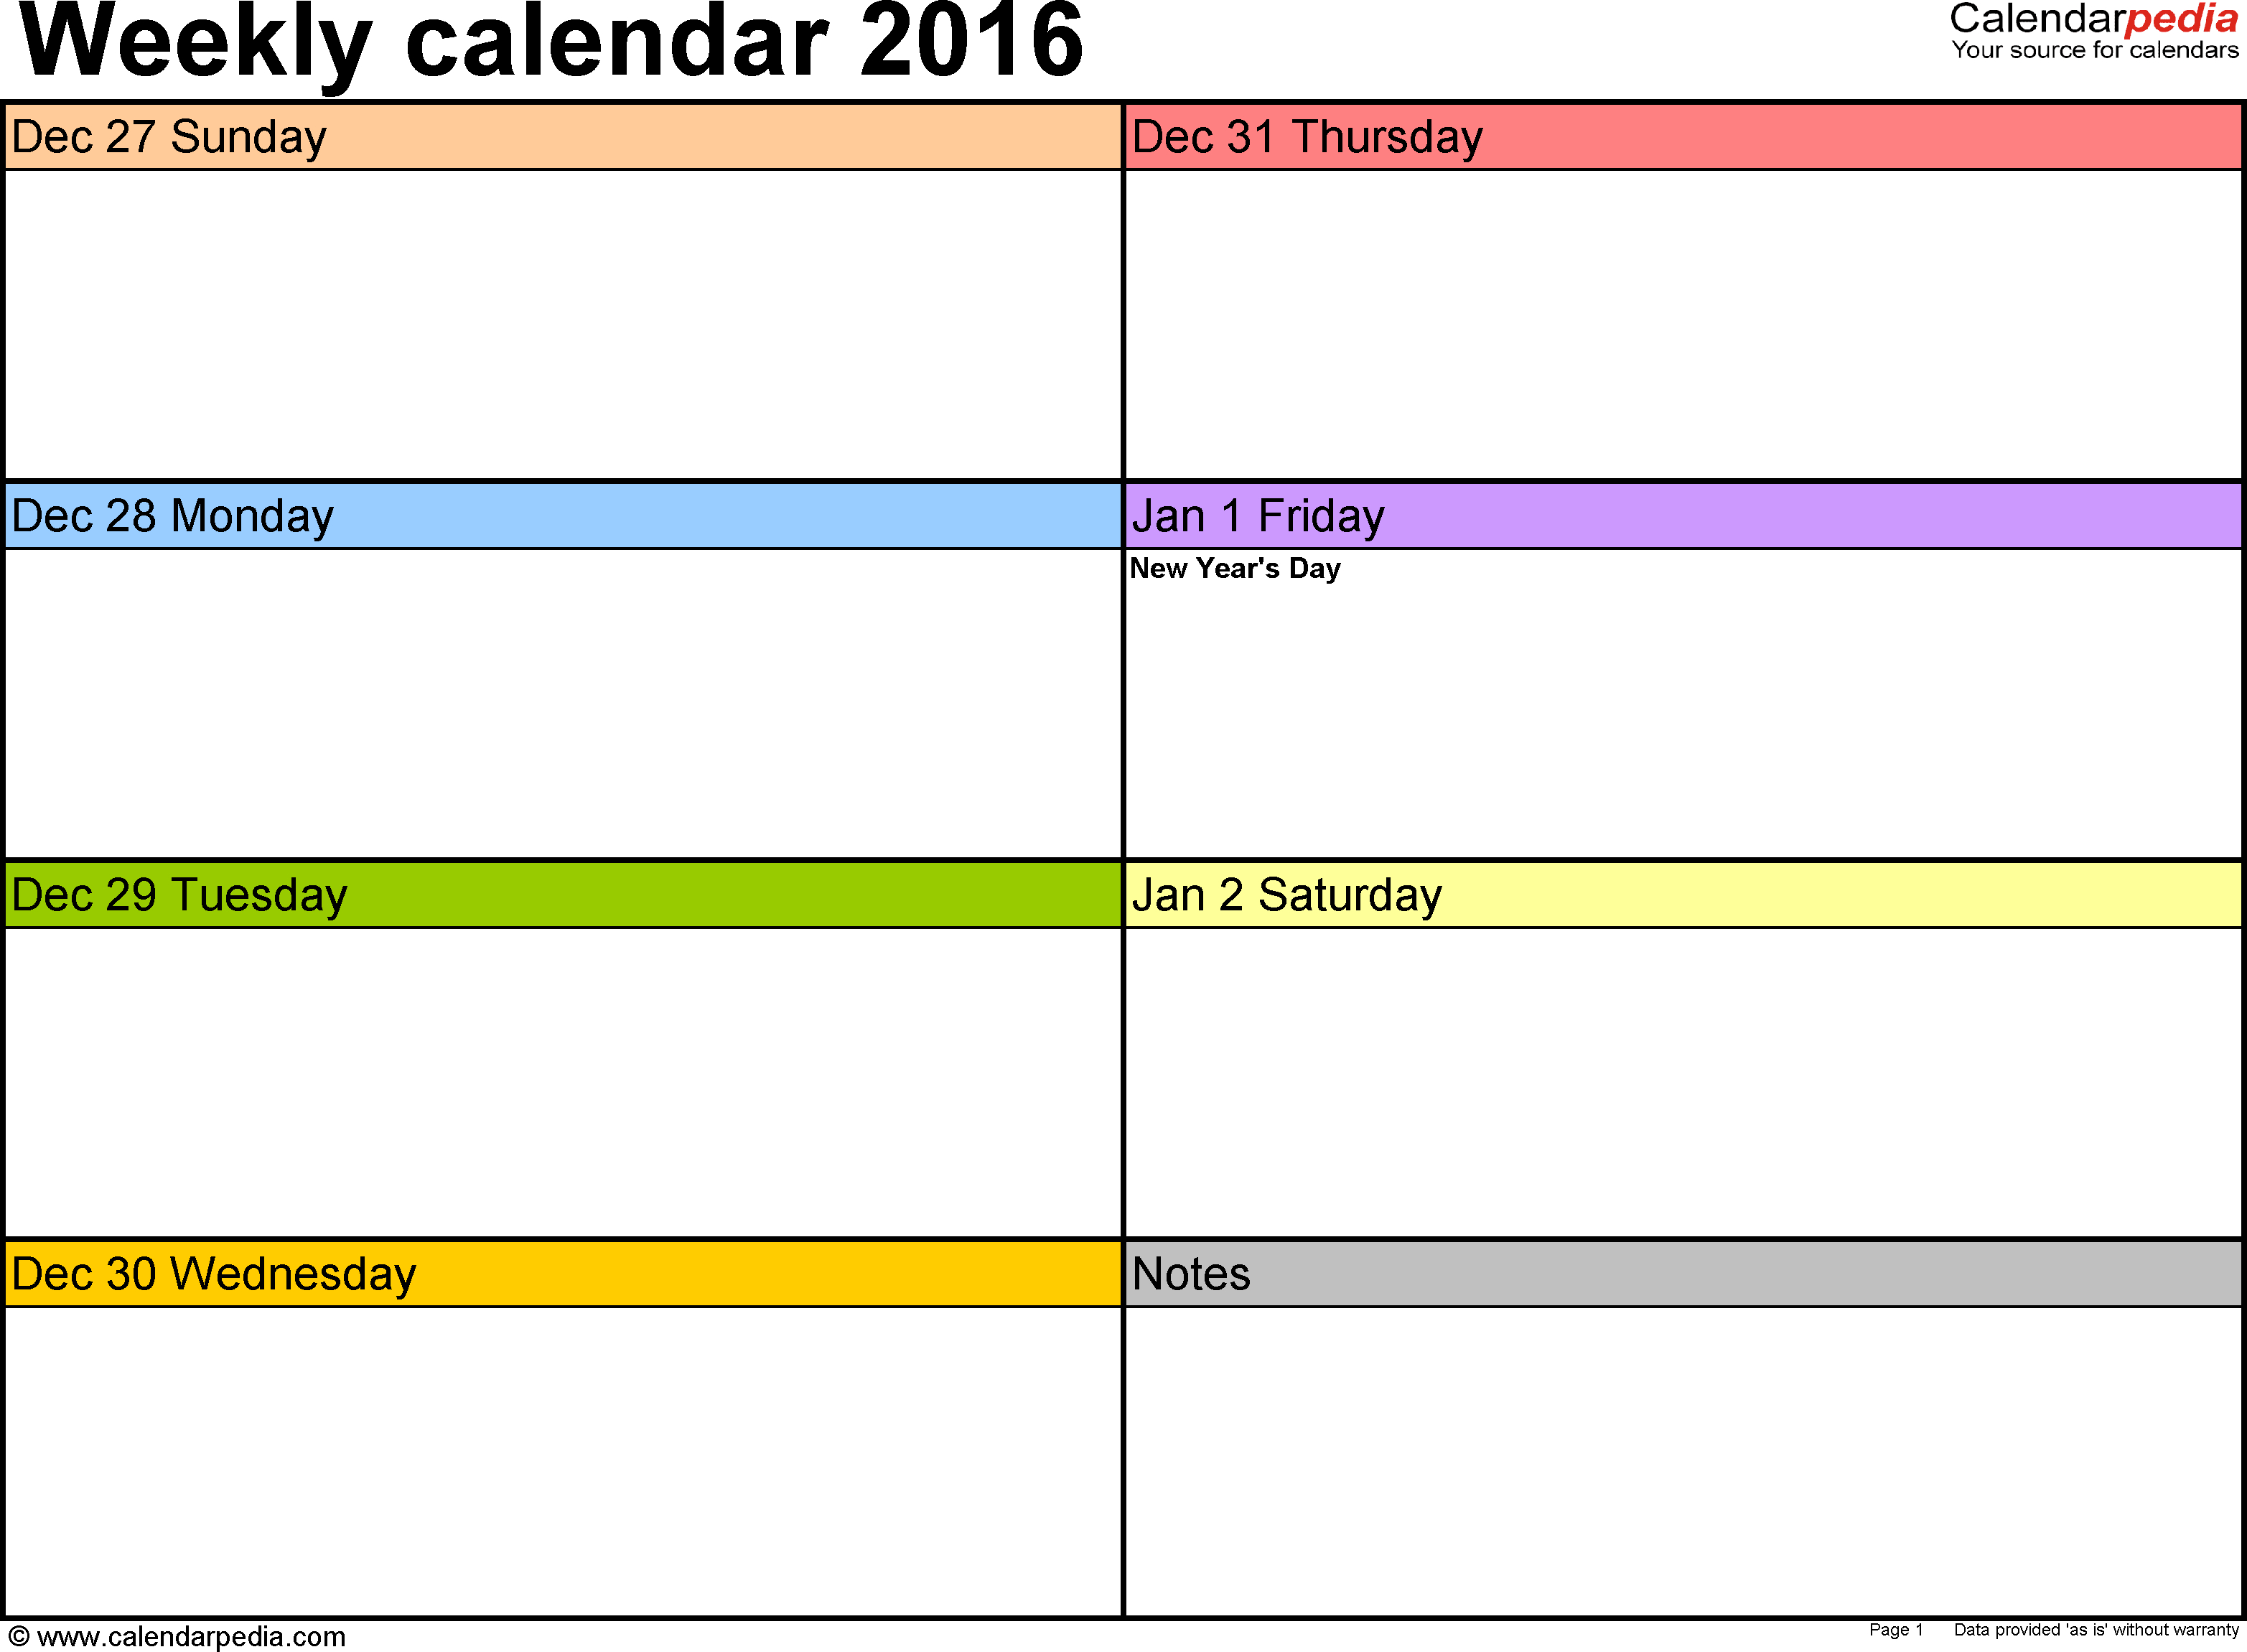 017 Weekly Calendar Template Ideas Wonderful Blank 2016 with regard to Free Online Weekly Calendar